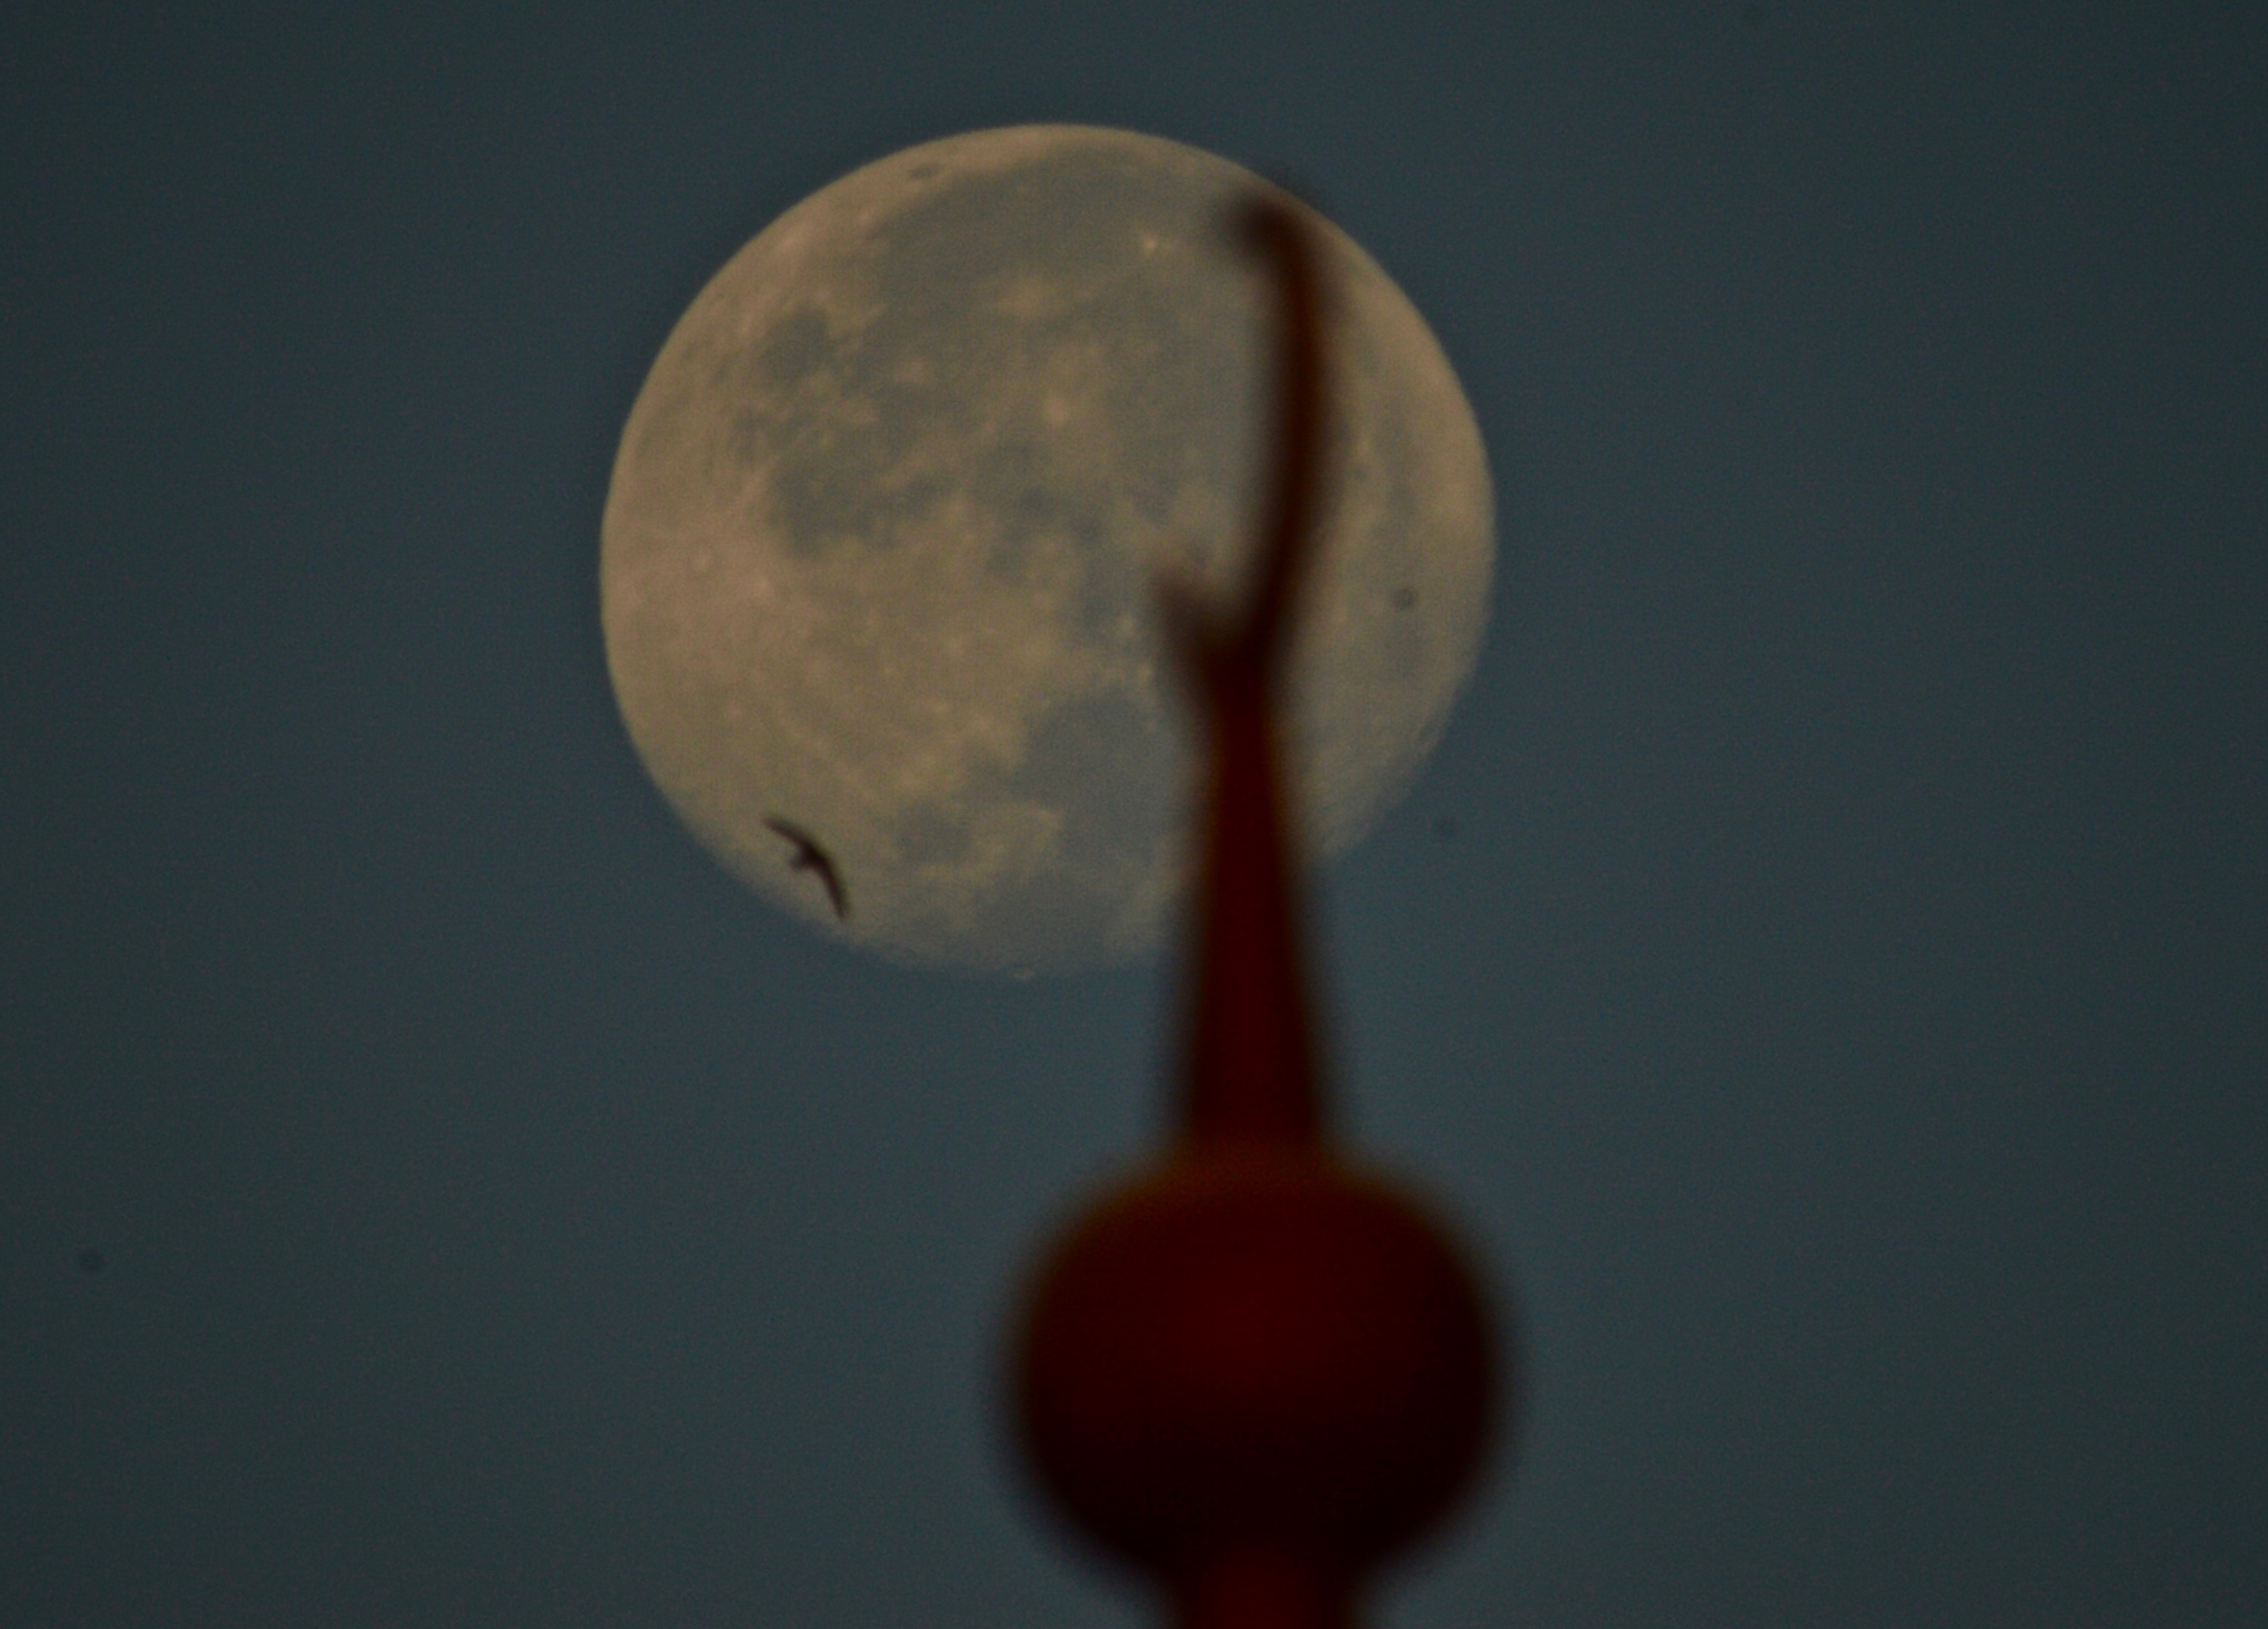 full moon, a bird , sunrise & minaret 